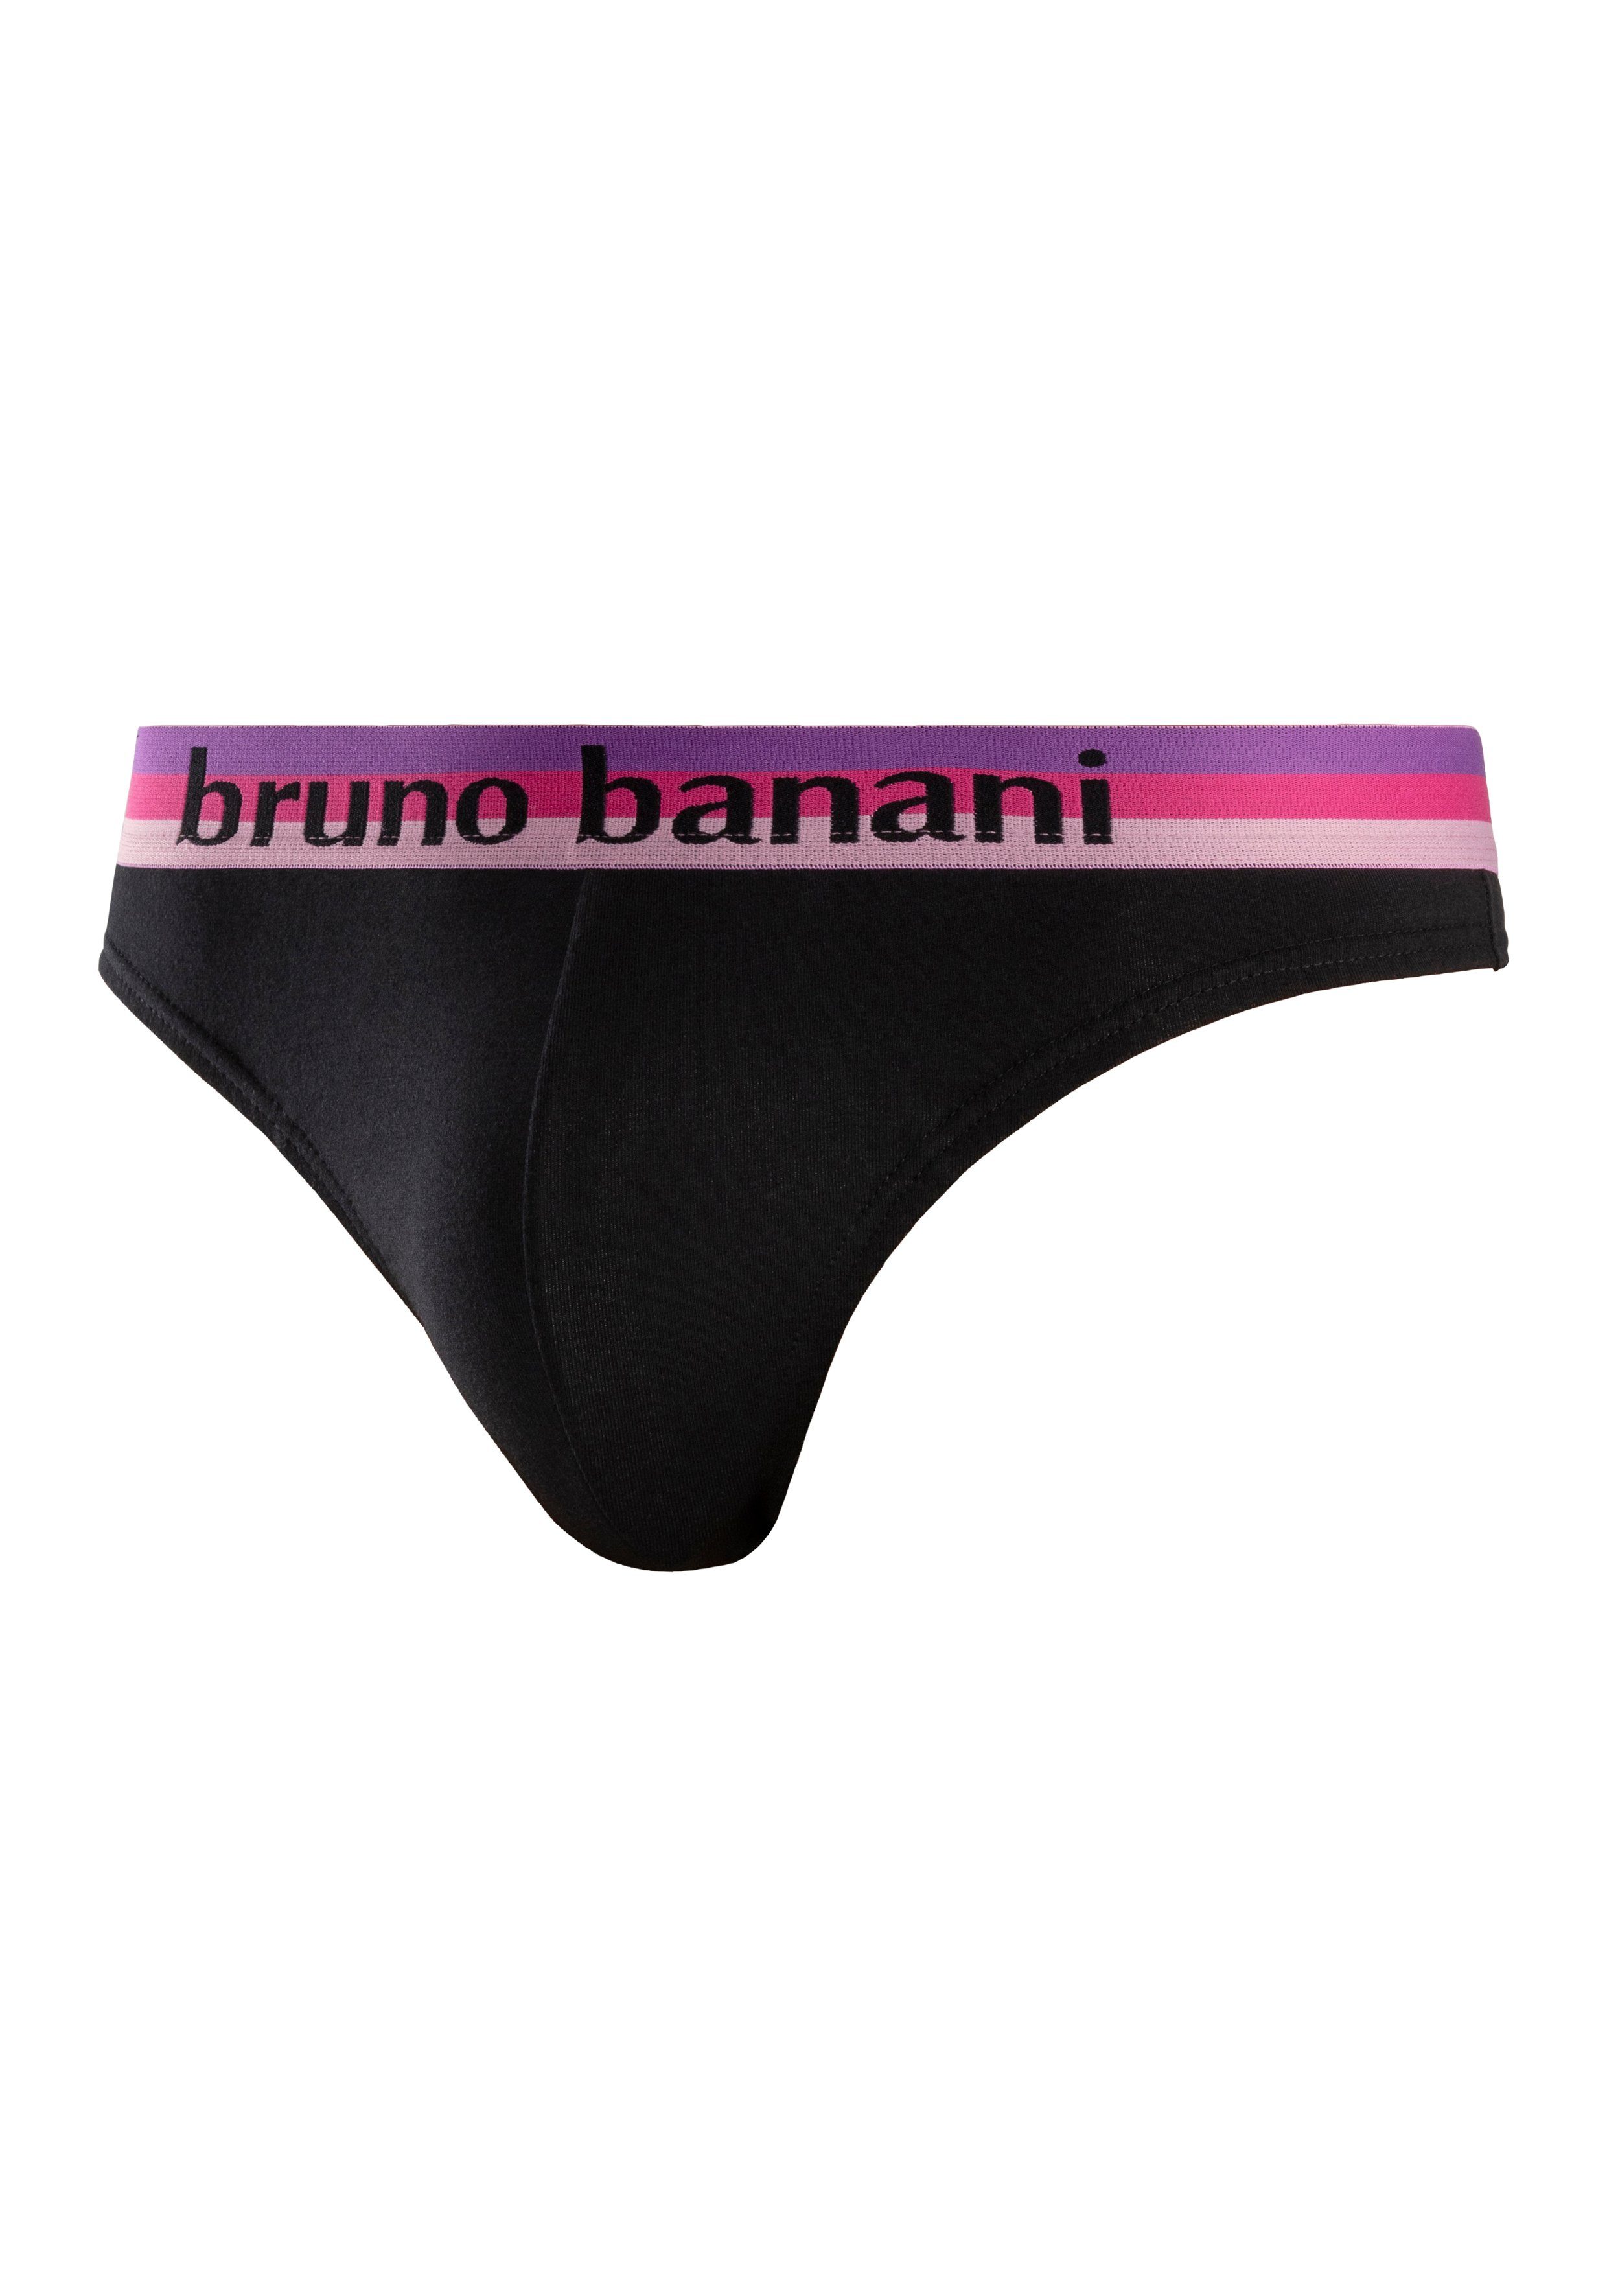 Wäsche/Bademode Unterhosen Bruno Banani String (5 Stück) mit Streifen Logo Webbund